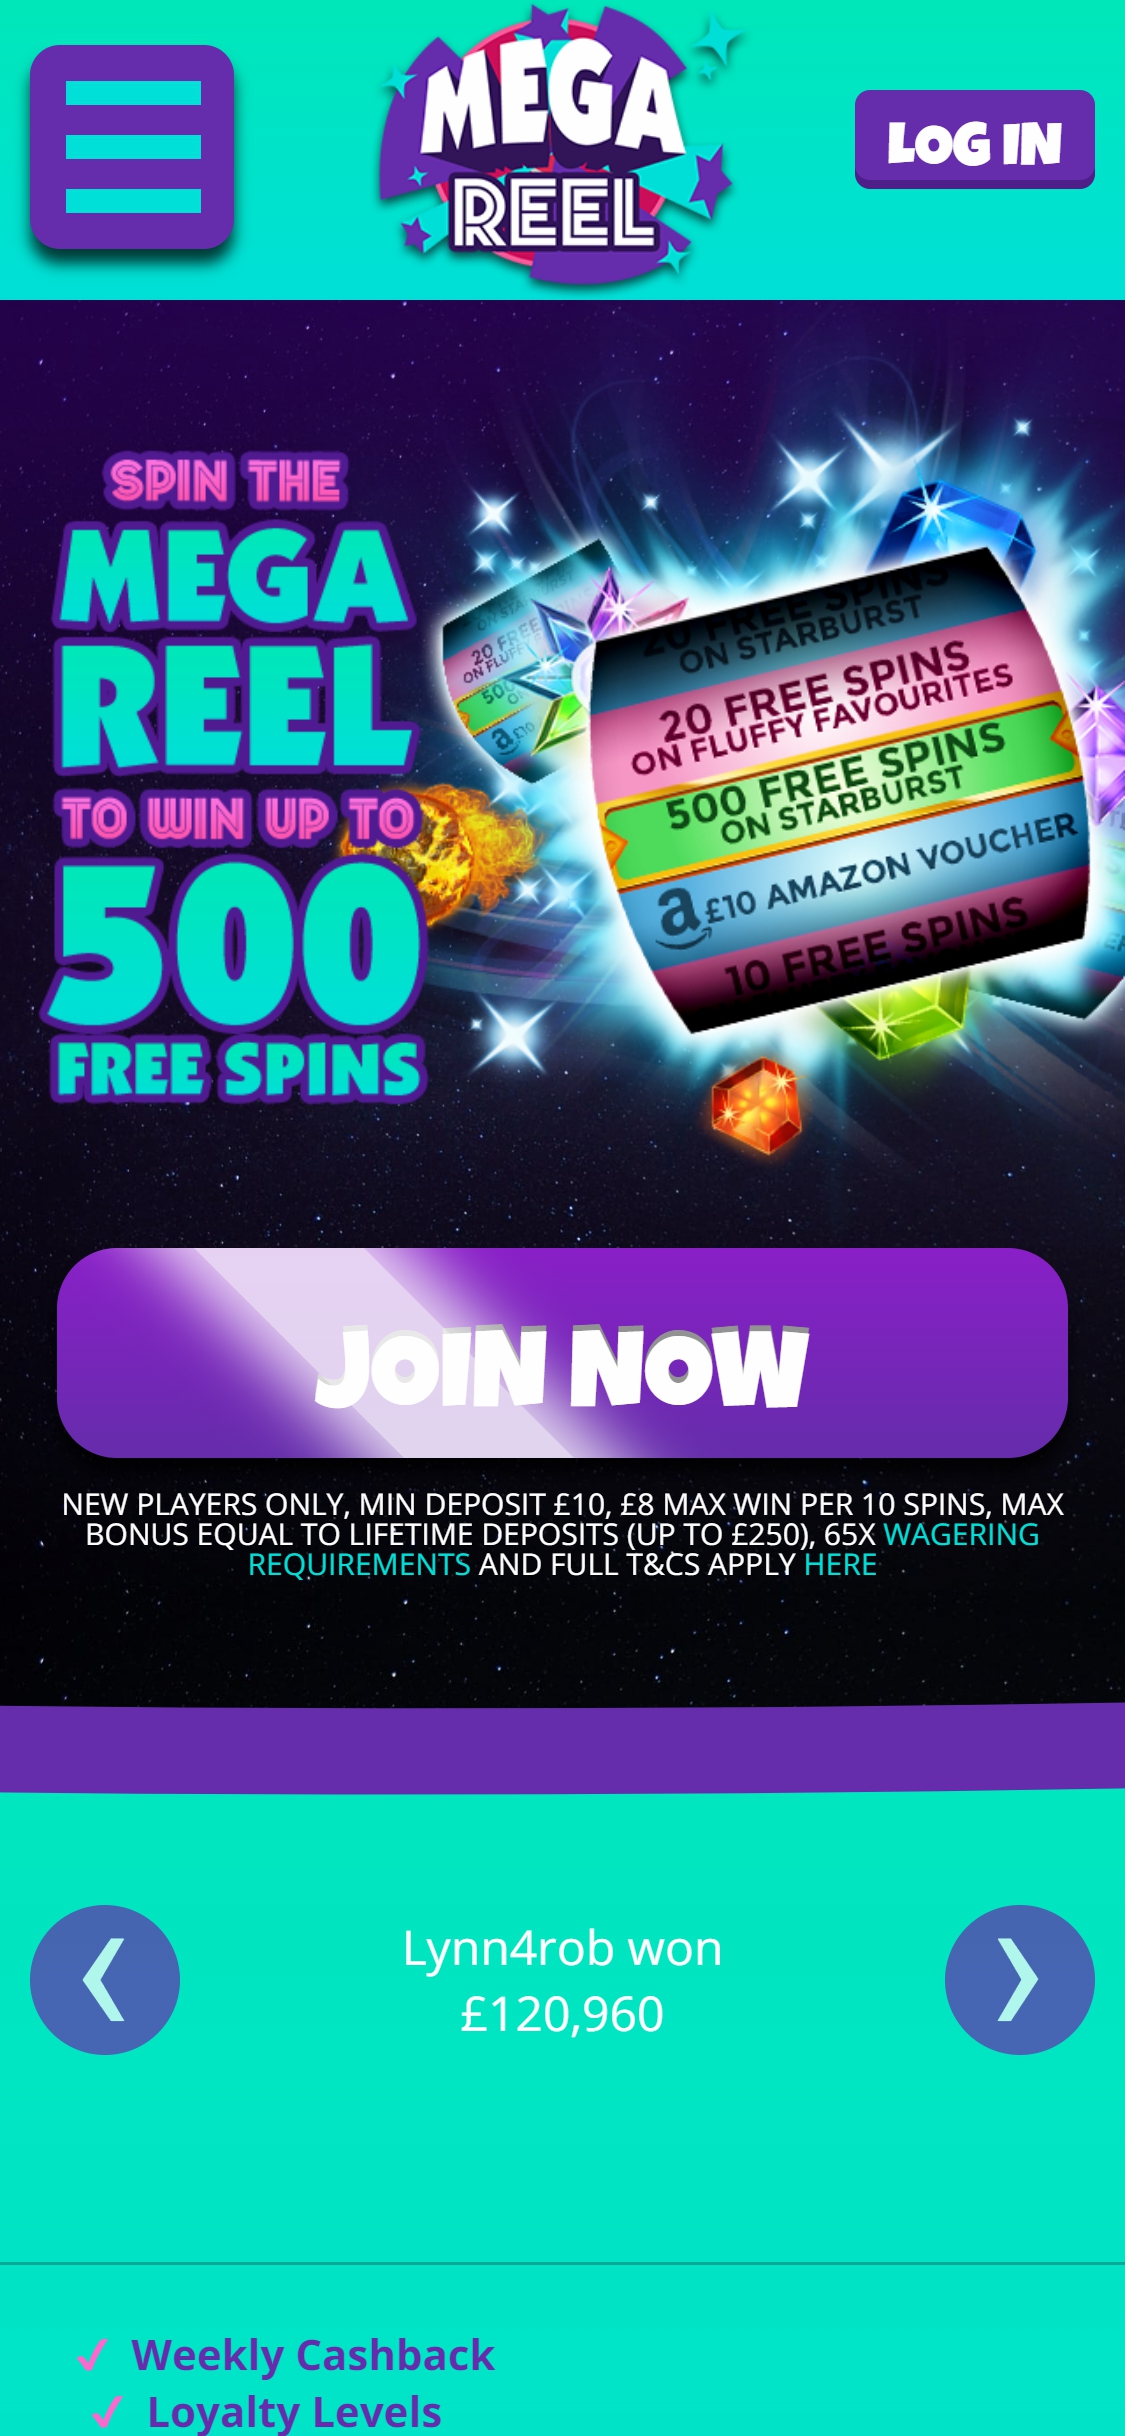 Mega Reel Casino Mobile Review